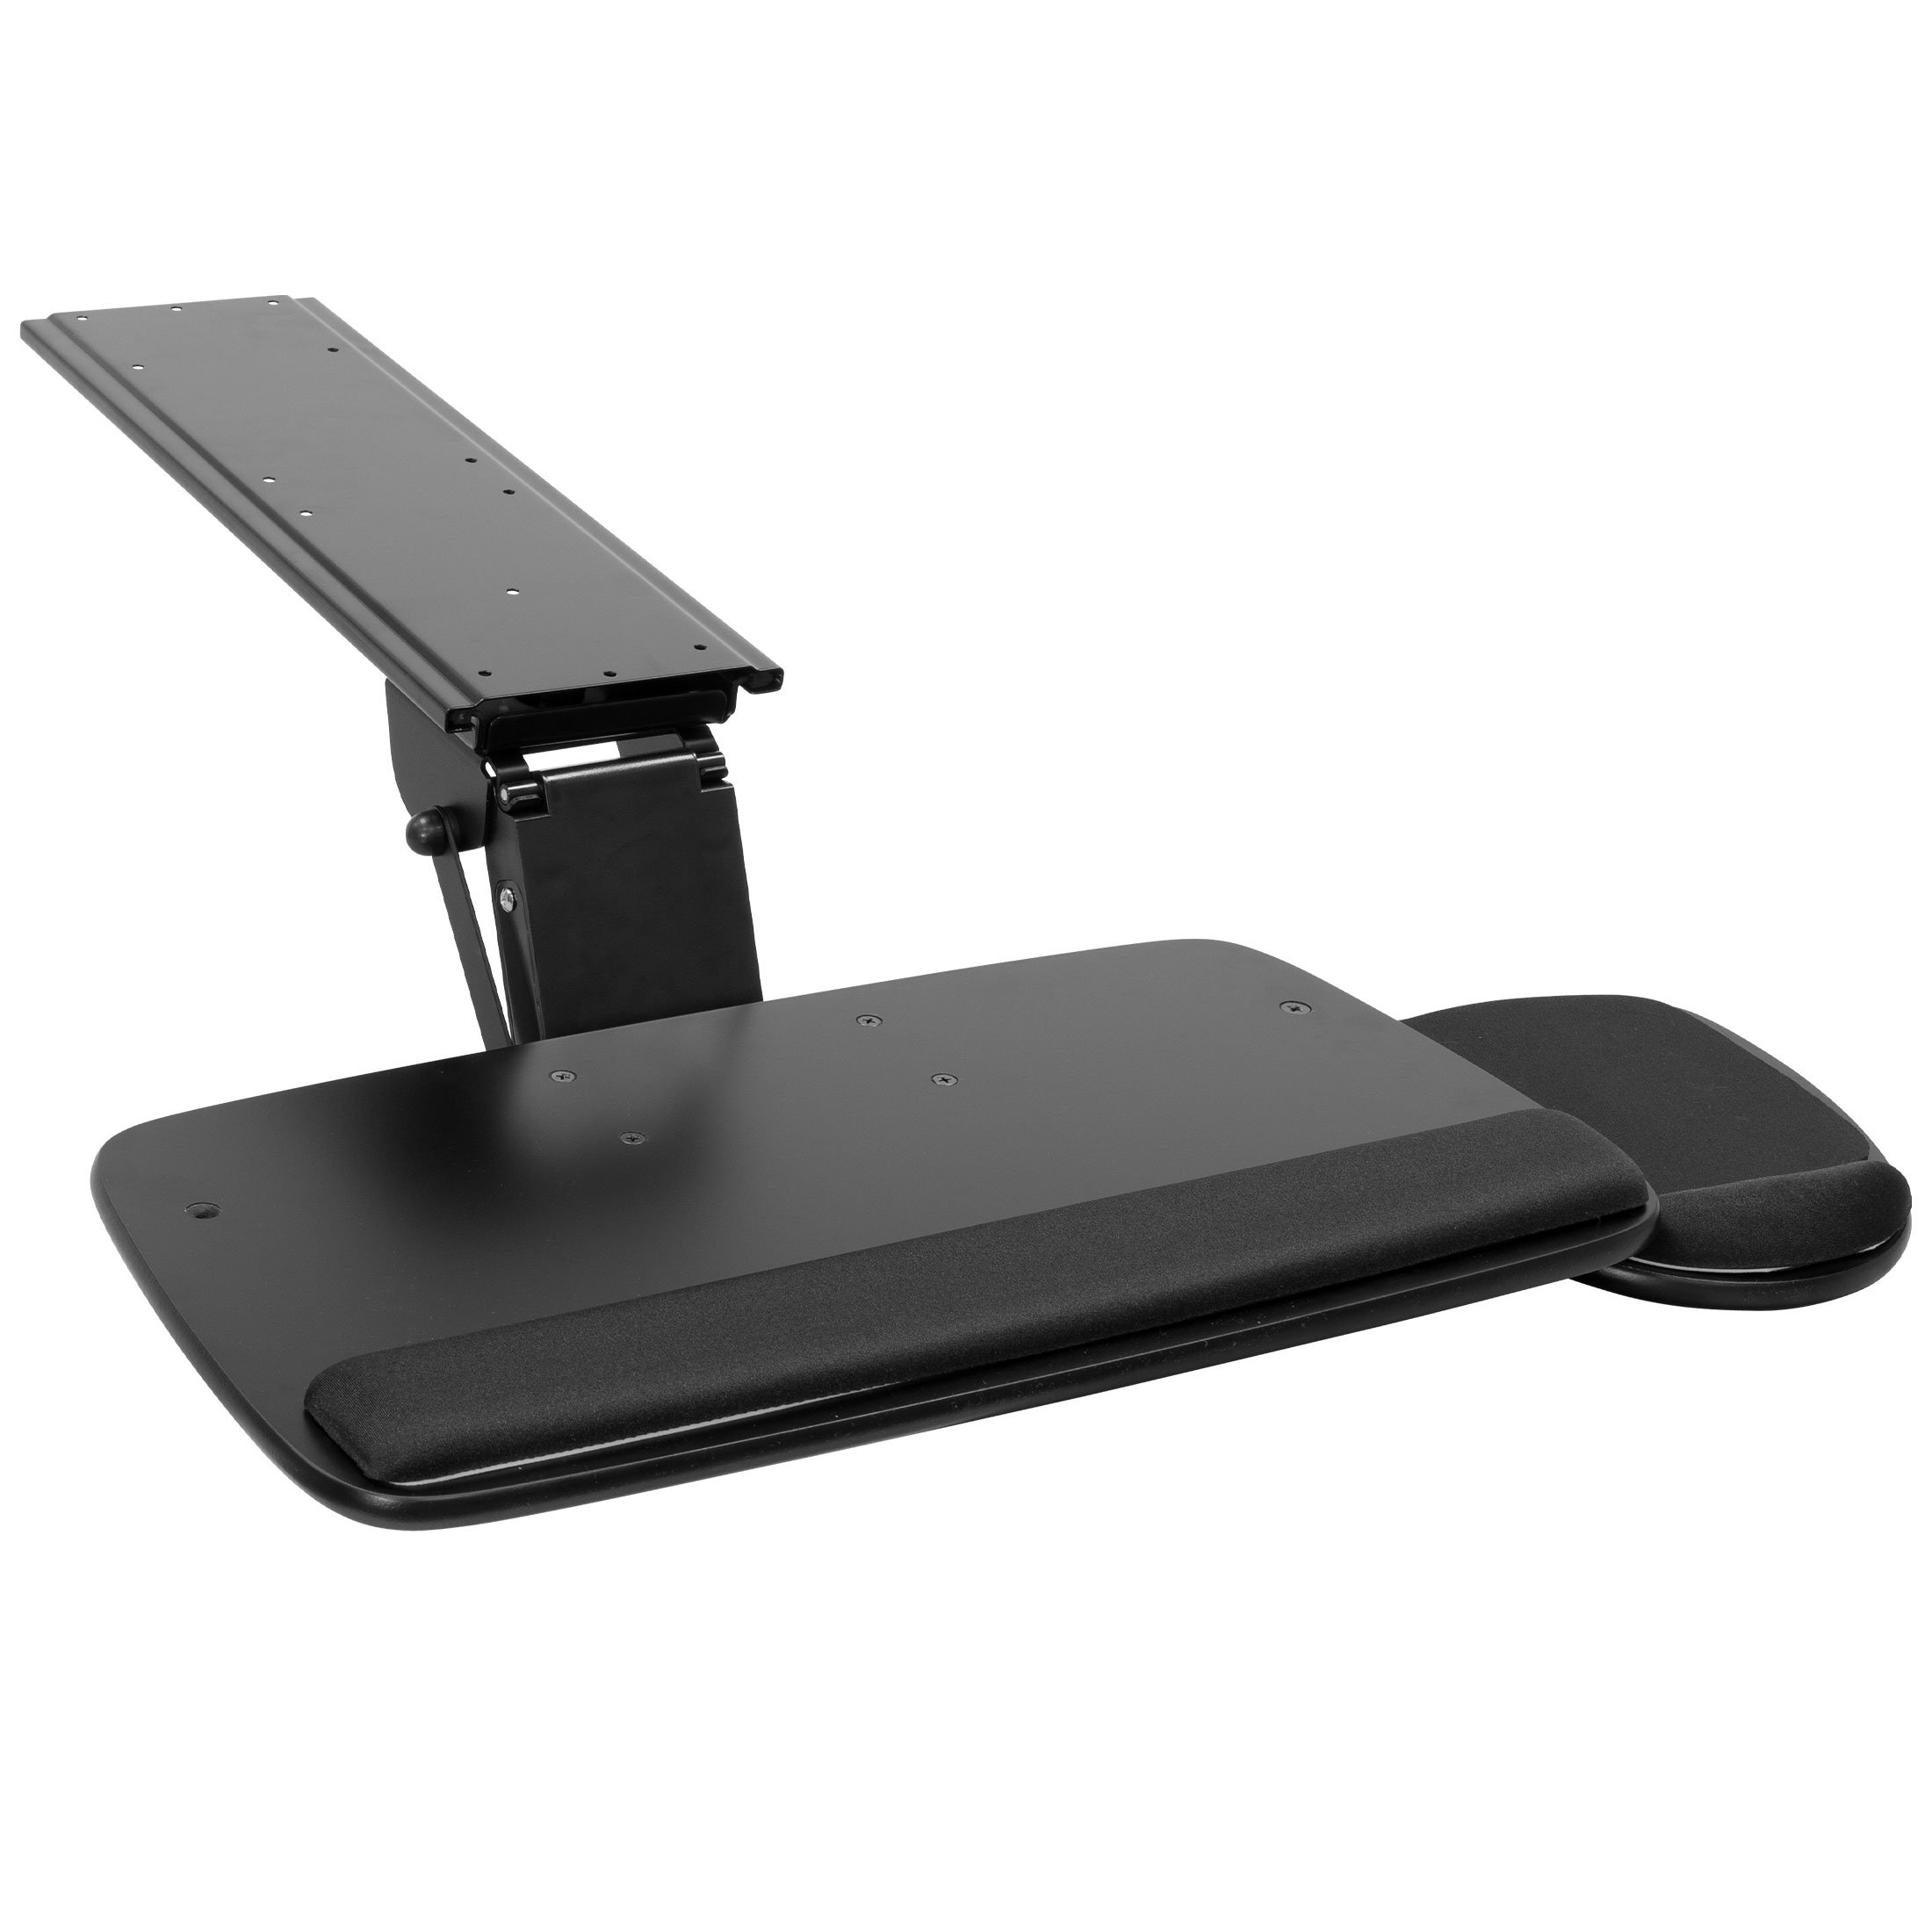 https://assets.wfcdn.com/im/99231675/compr-r85/2364/236421955/mount-it-adjustable-under-desk-keyboard-tray-and-mouse-drawer-platform-with-wrist-rest-pad-1725.jpg